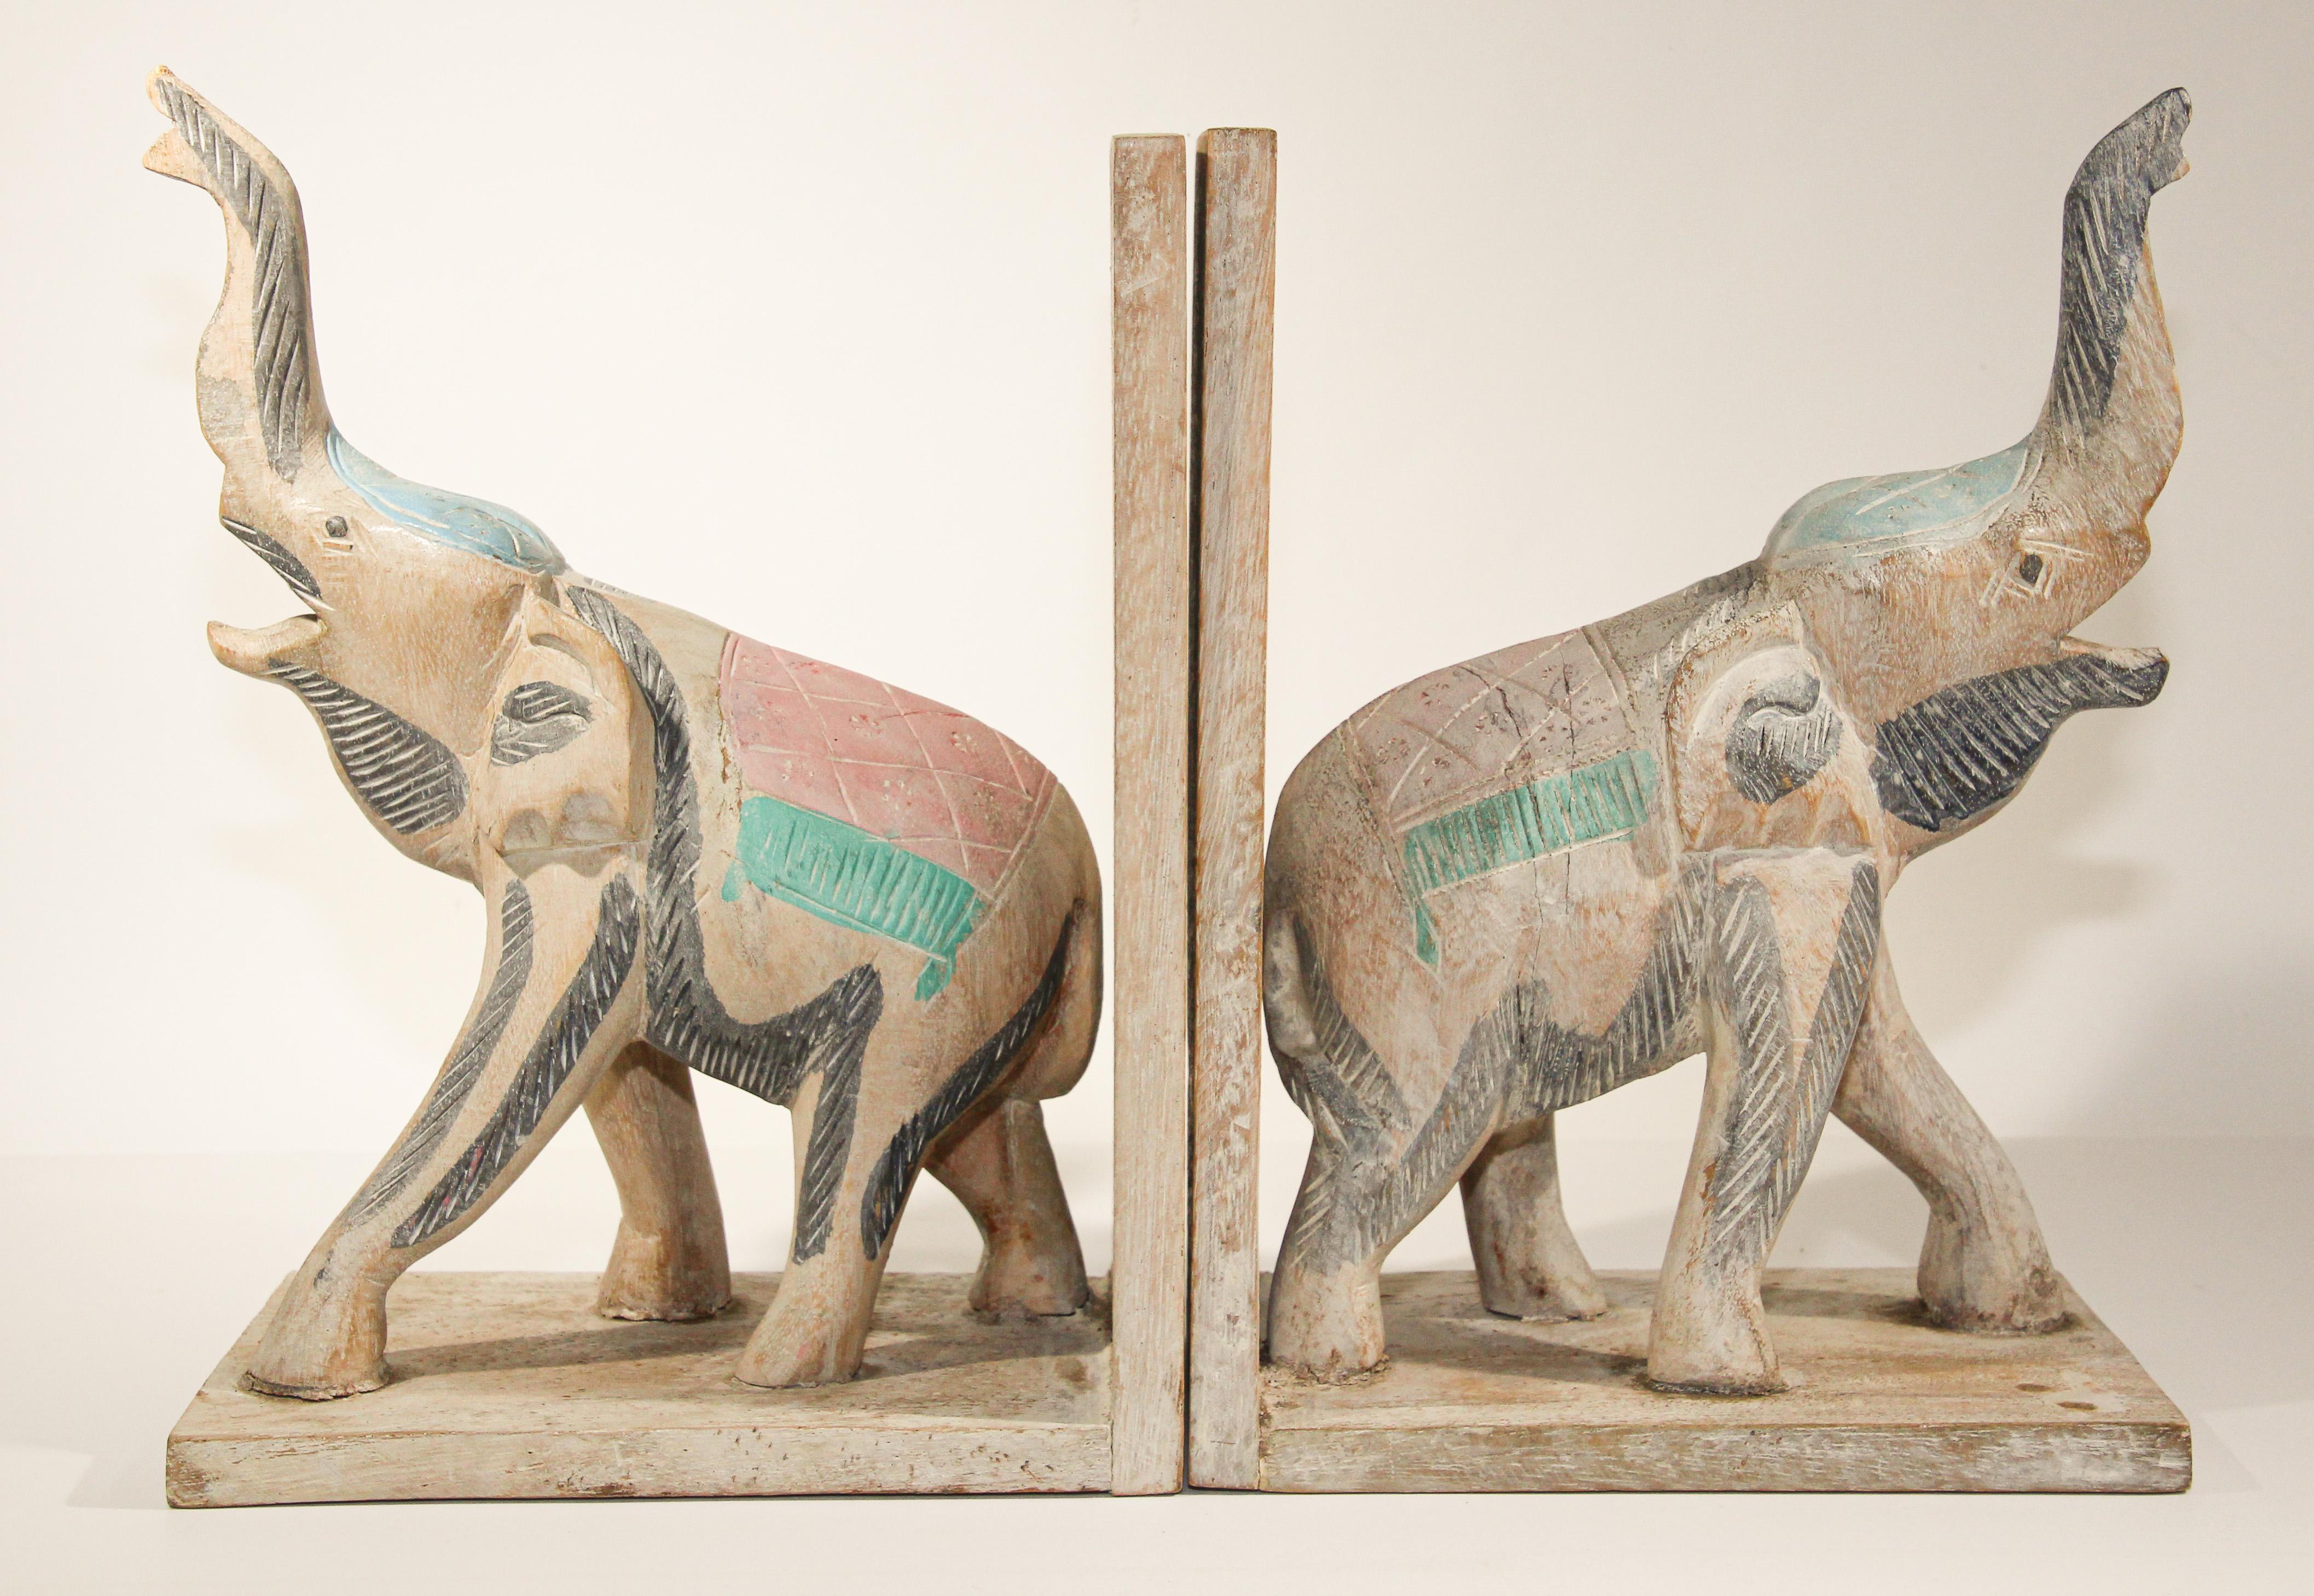 Schönes Paar handgeschnitzter asiatischer Elefanten-Buchstützen aus Holz.
große handgeschnitzte Elefanten-Buchstützen mit Rüssel nach oben, für Asiaten steht dies für gute Gesundheit im Fen Shui.
Diese sind handgeschnitzt und handbemalt und daher